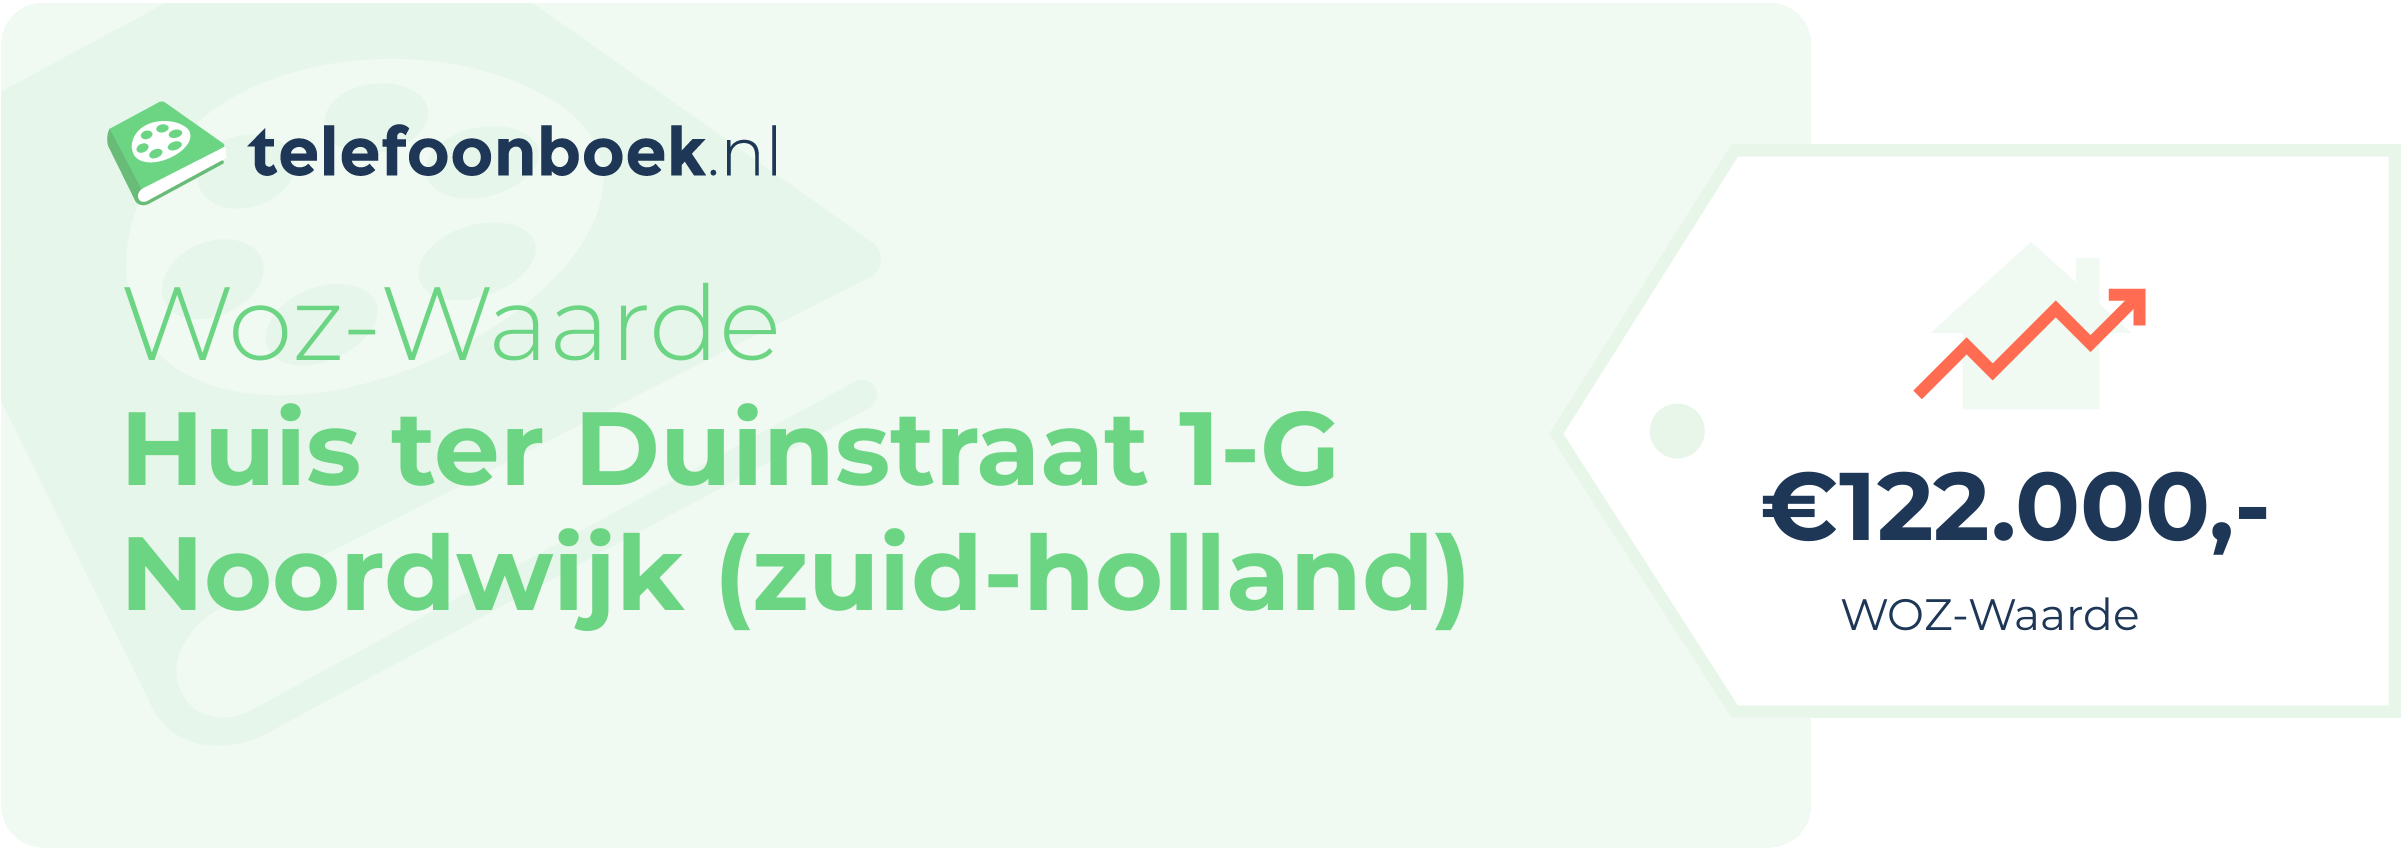 WOZ-waarde Huis Ter Duinstraat 1-G Noordwijk (Zuid-Holland)